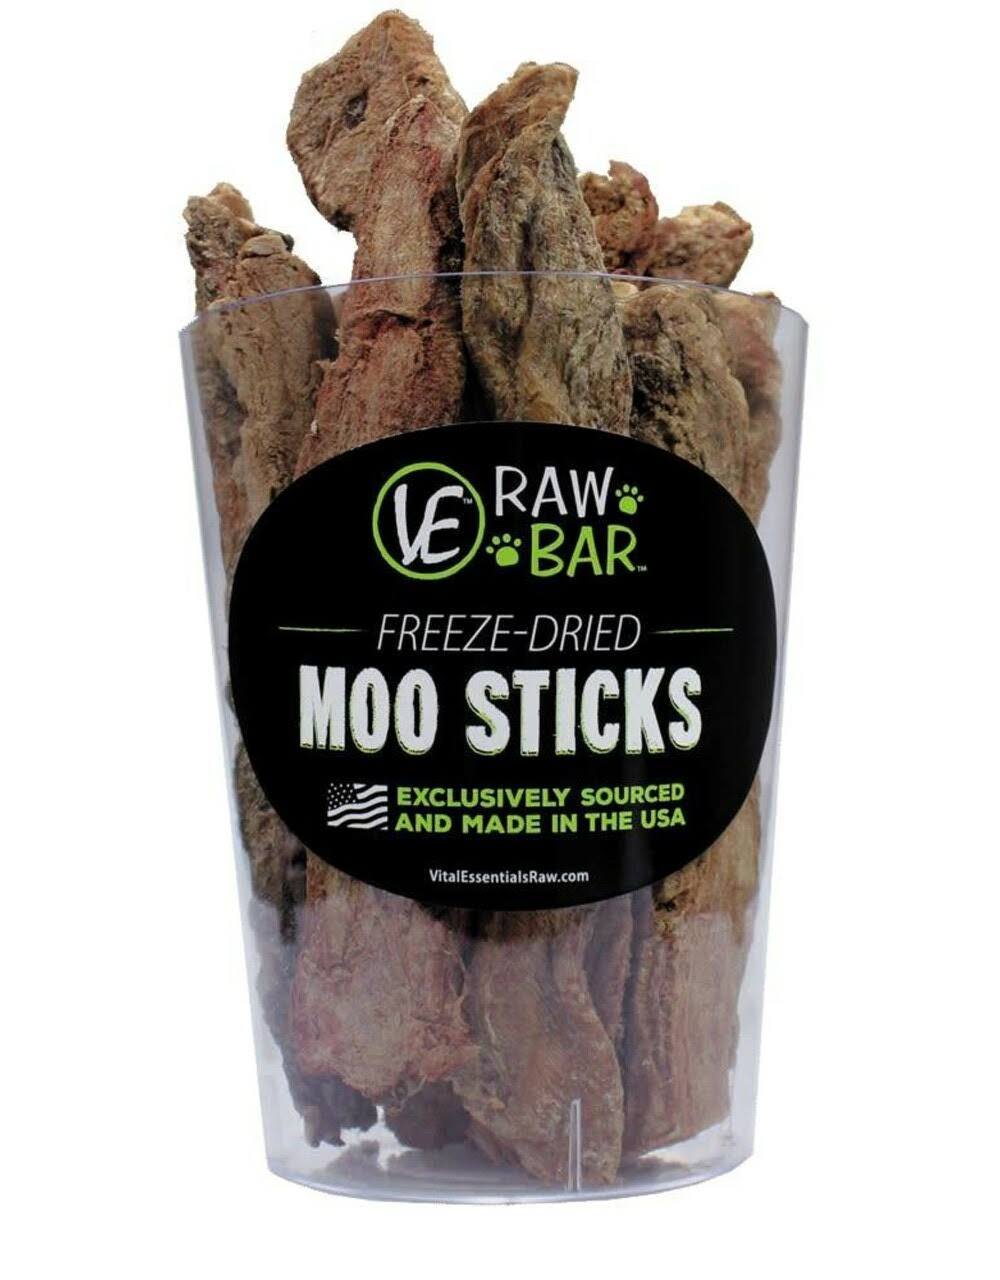 Vital Essentials Freeze Dried Raw Bar Moo Sticks